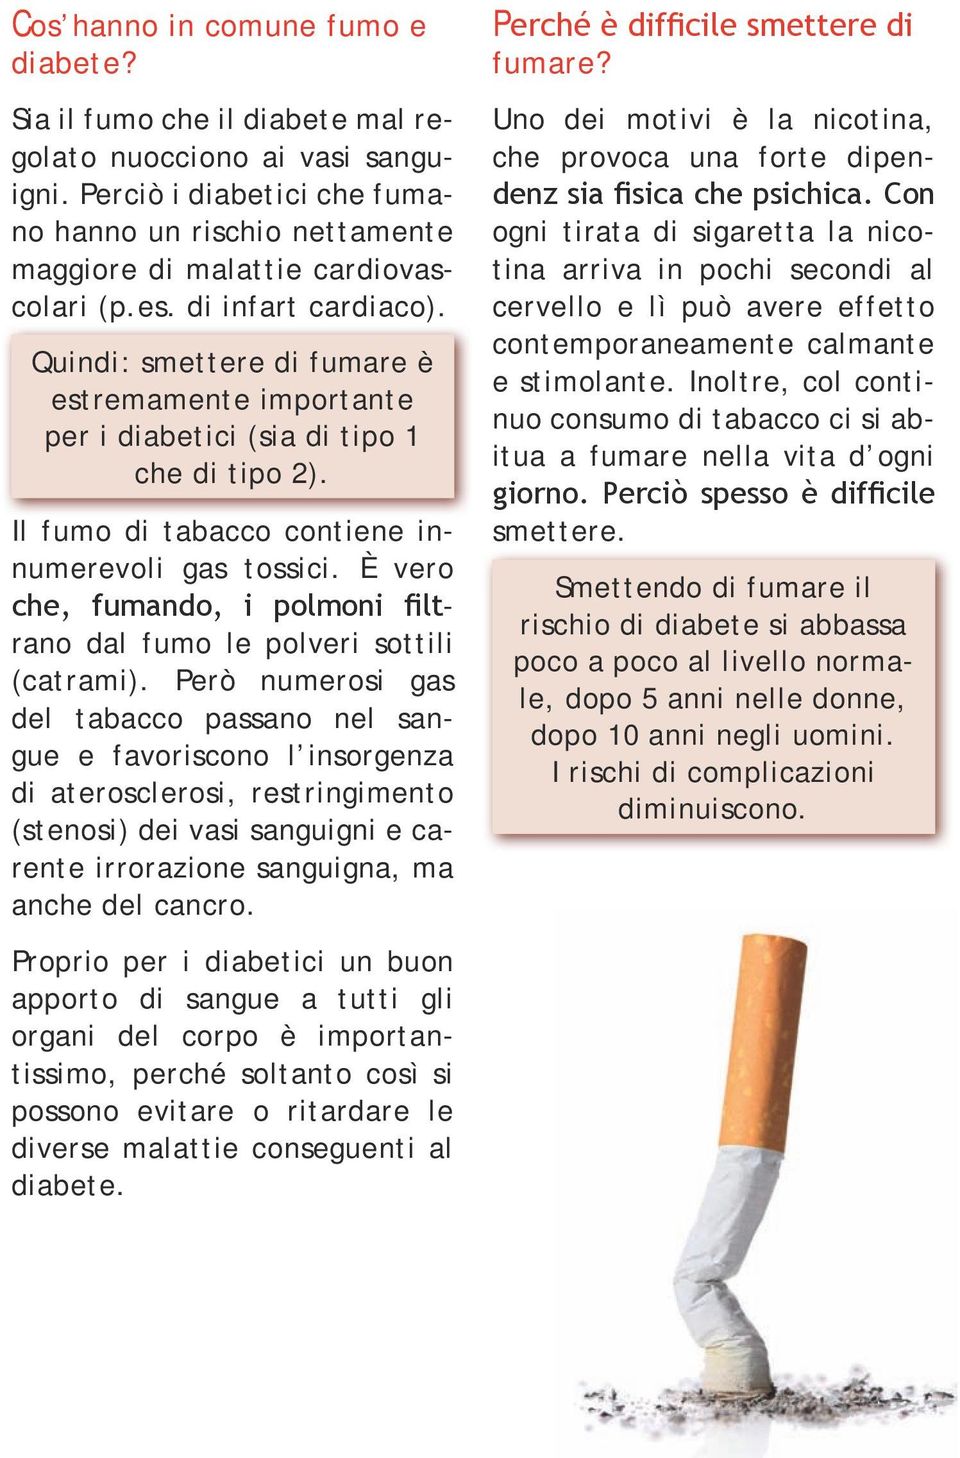 Quindi: smettere di fumare è estremamente importante per i diabetici (sia di tipo 1 che di tipo 2). Il fumo di tabacco contiene innumerevoli gas tossici.